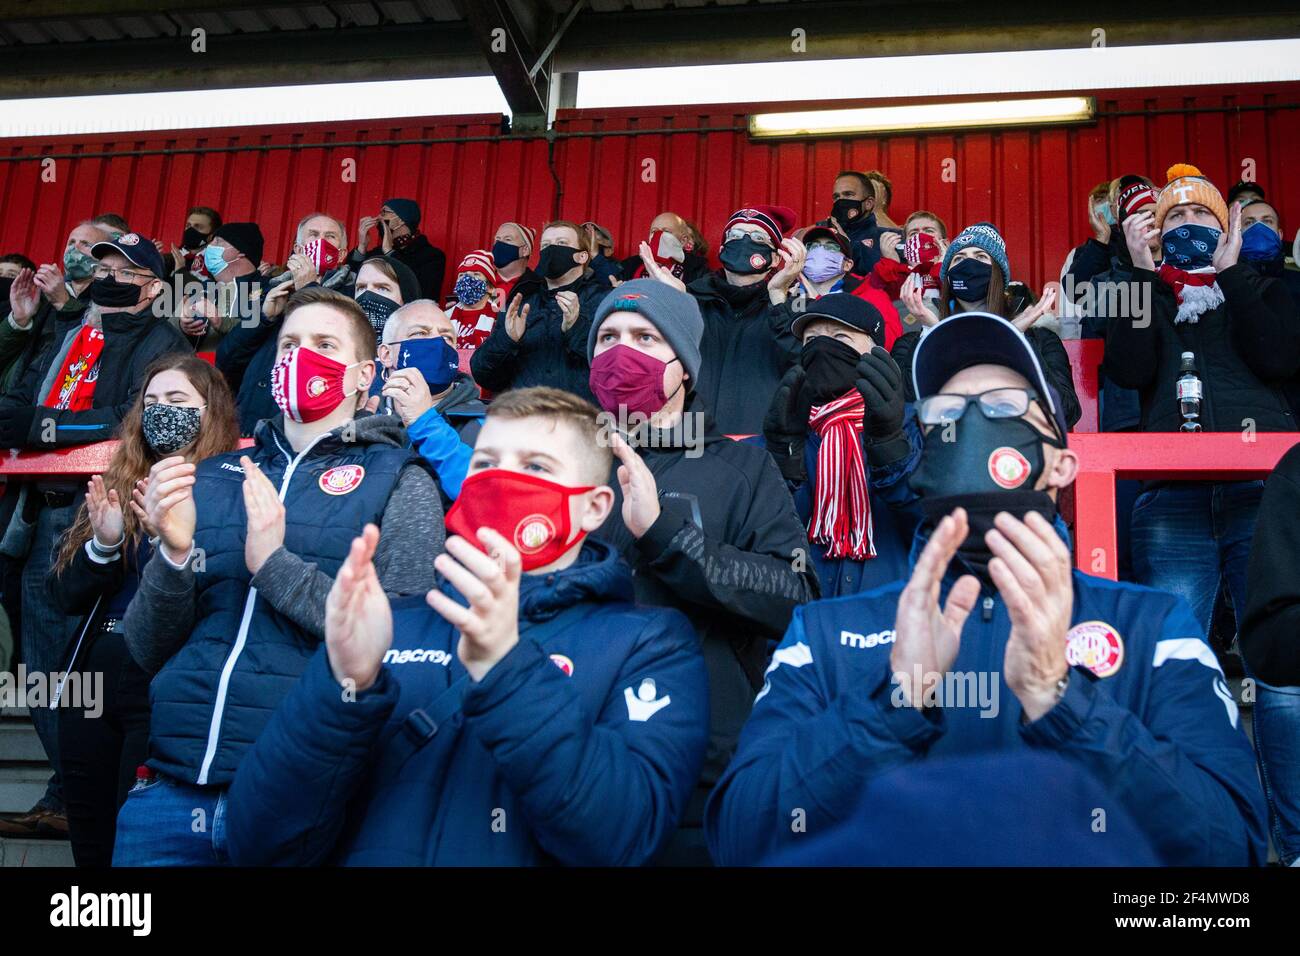 Tifosi e spettatori assistono alla partita di calcio della bassa lega durante il Covid-19, pandemia di Coronavirus in Inghilterra, Regno Unito. Indossare rivestimenti per il viso e maschere per il viso. Foto Stock